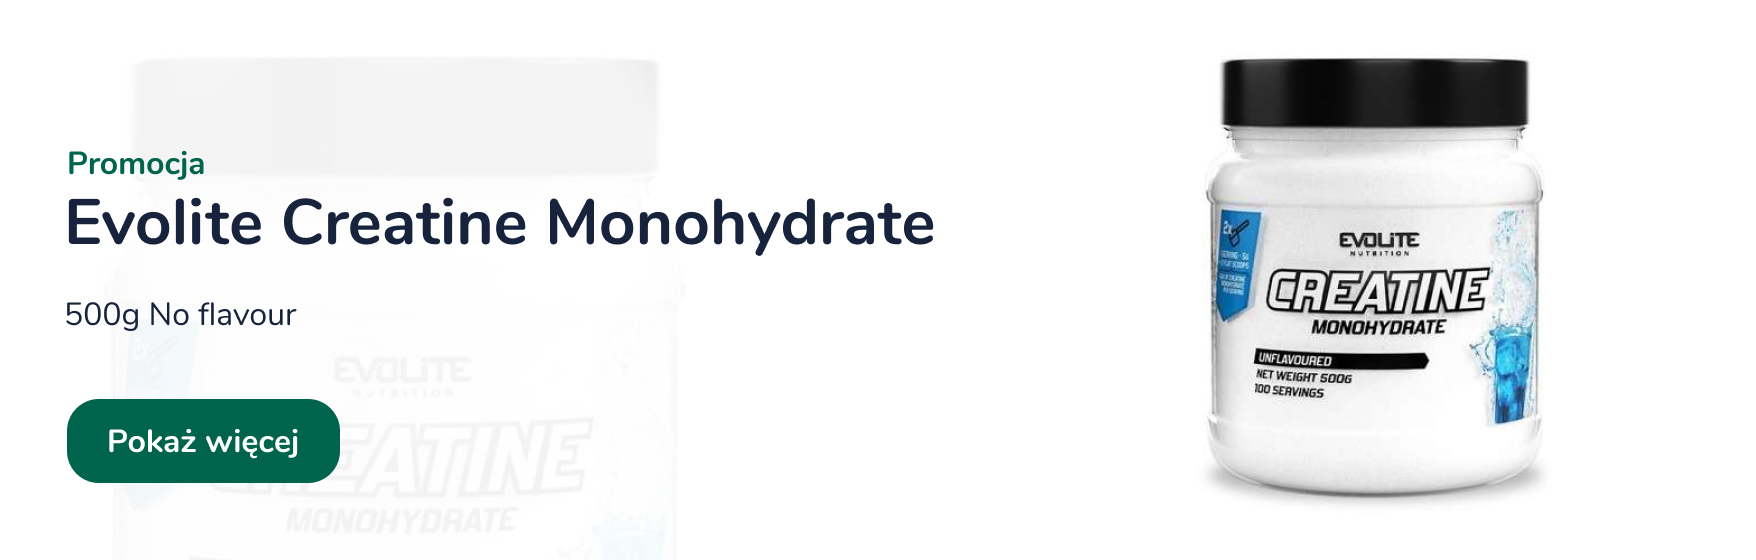 promocja-monohydrate